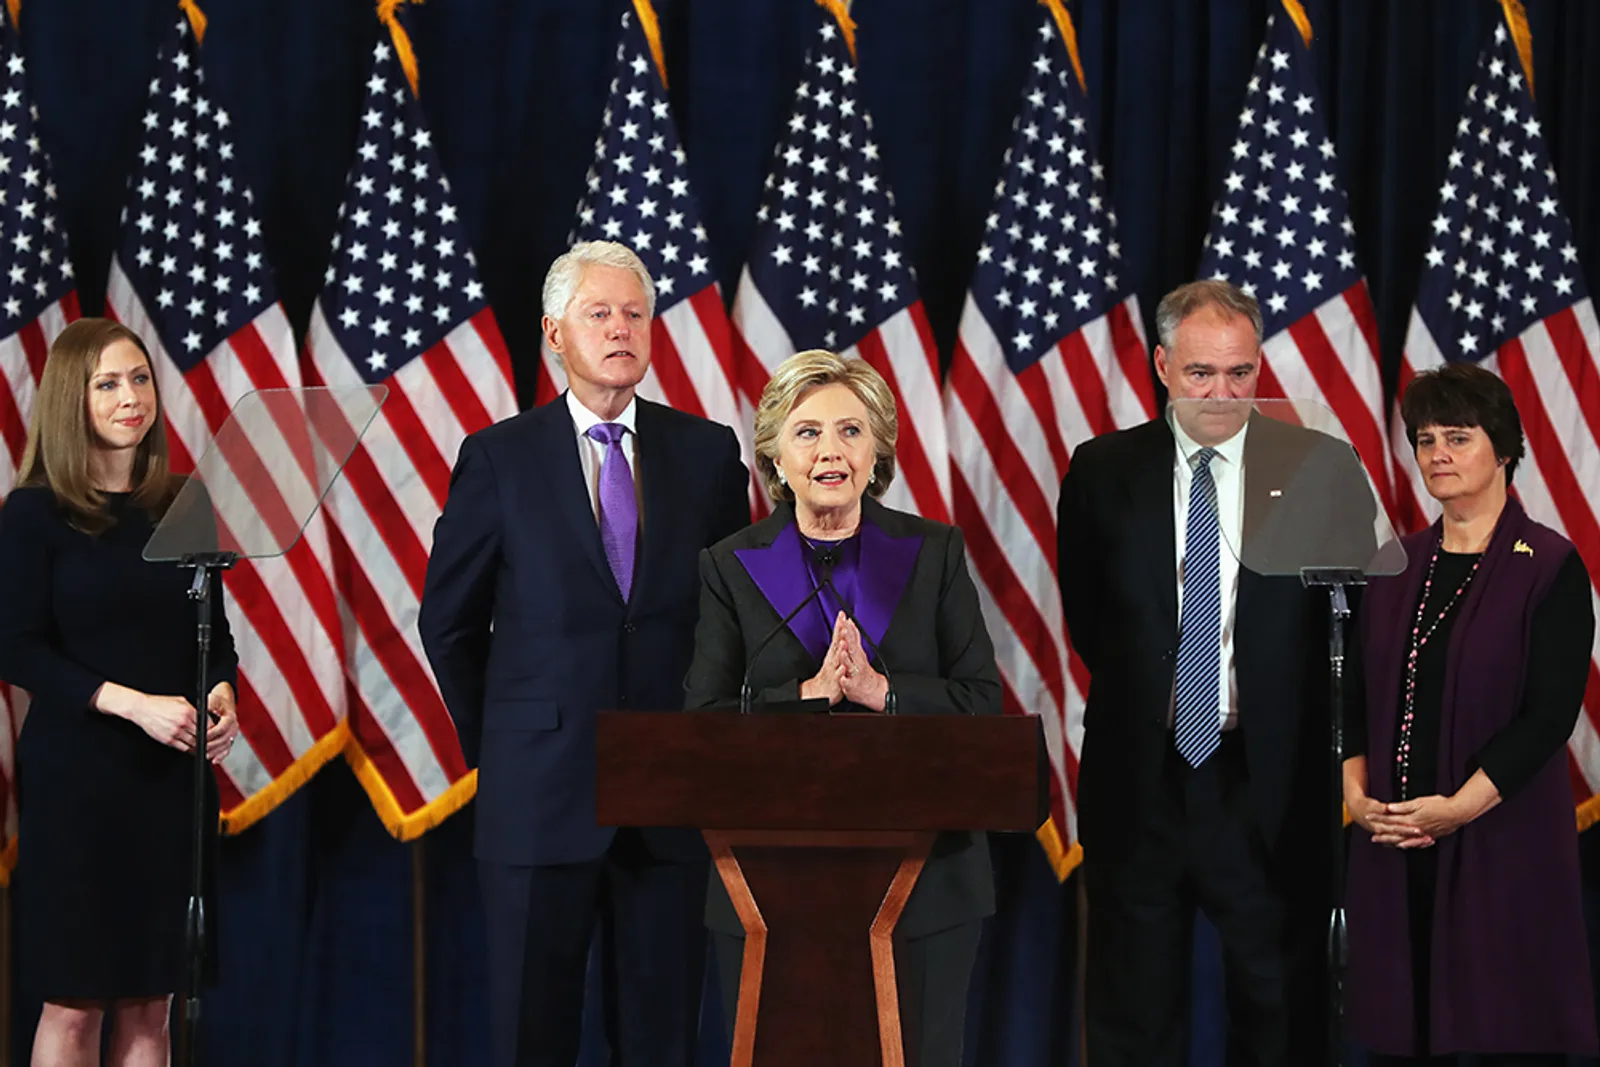 Pidato Kekalahan Hillary Clinton Justru Mengembalikan Semangat Kaum Perempuan di Penjuru Dunia